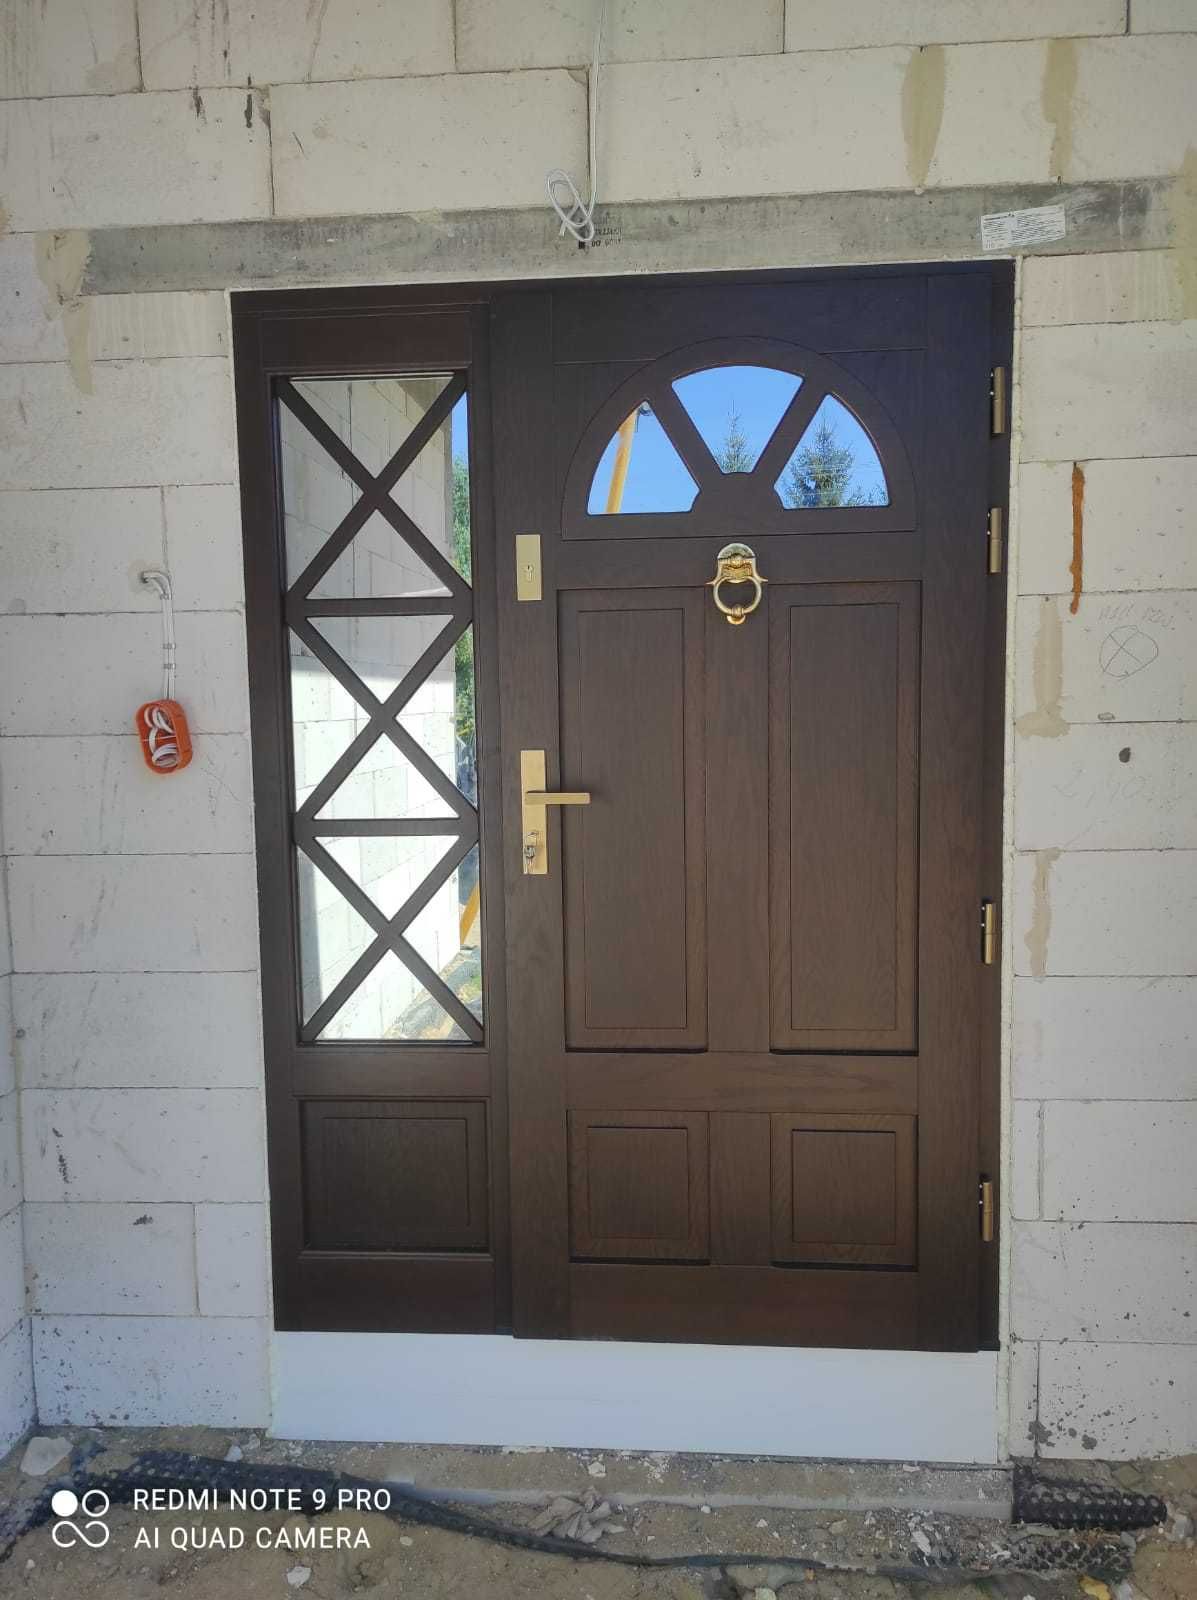 Drzwi drewniane  zewnętrzne dębowe dostawa GRATIS (czyste powietrze)